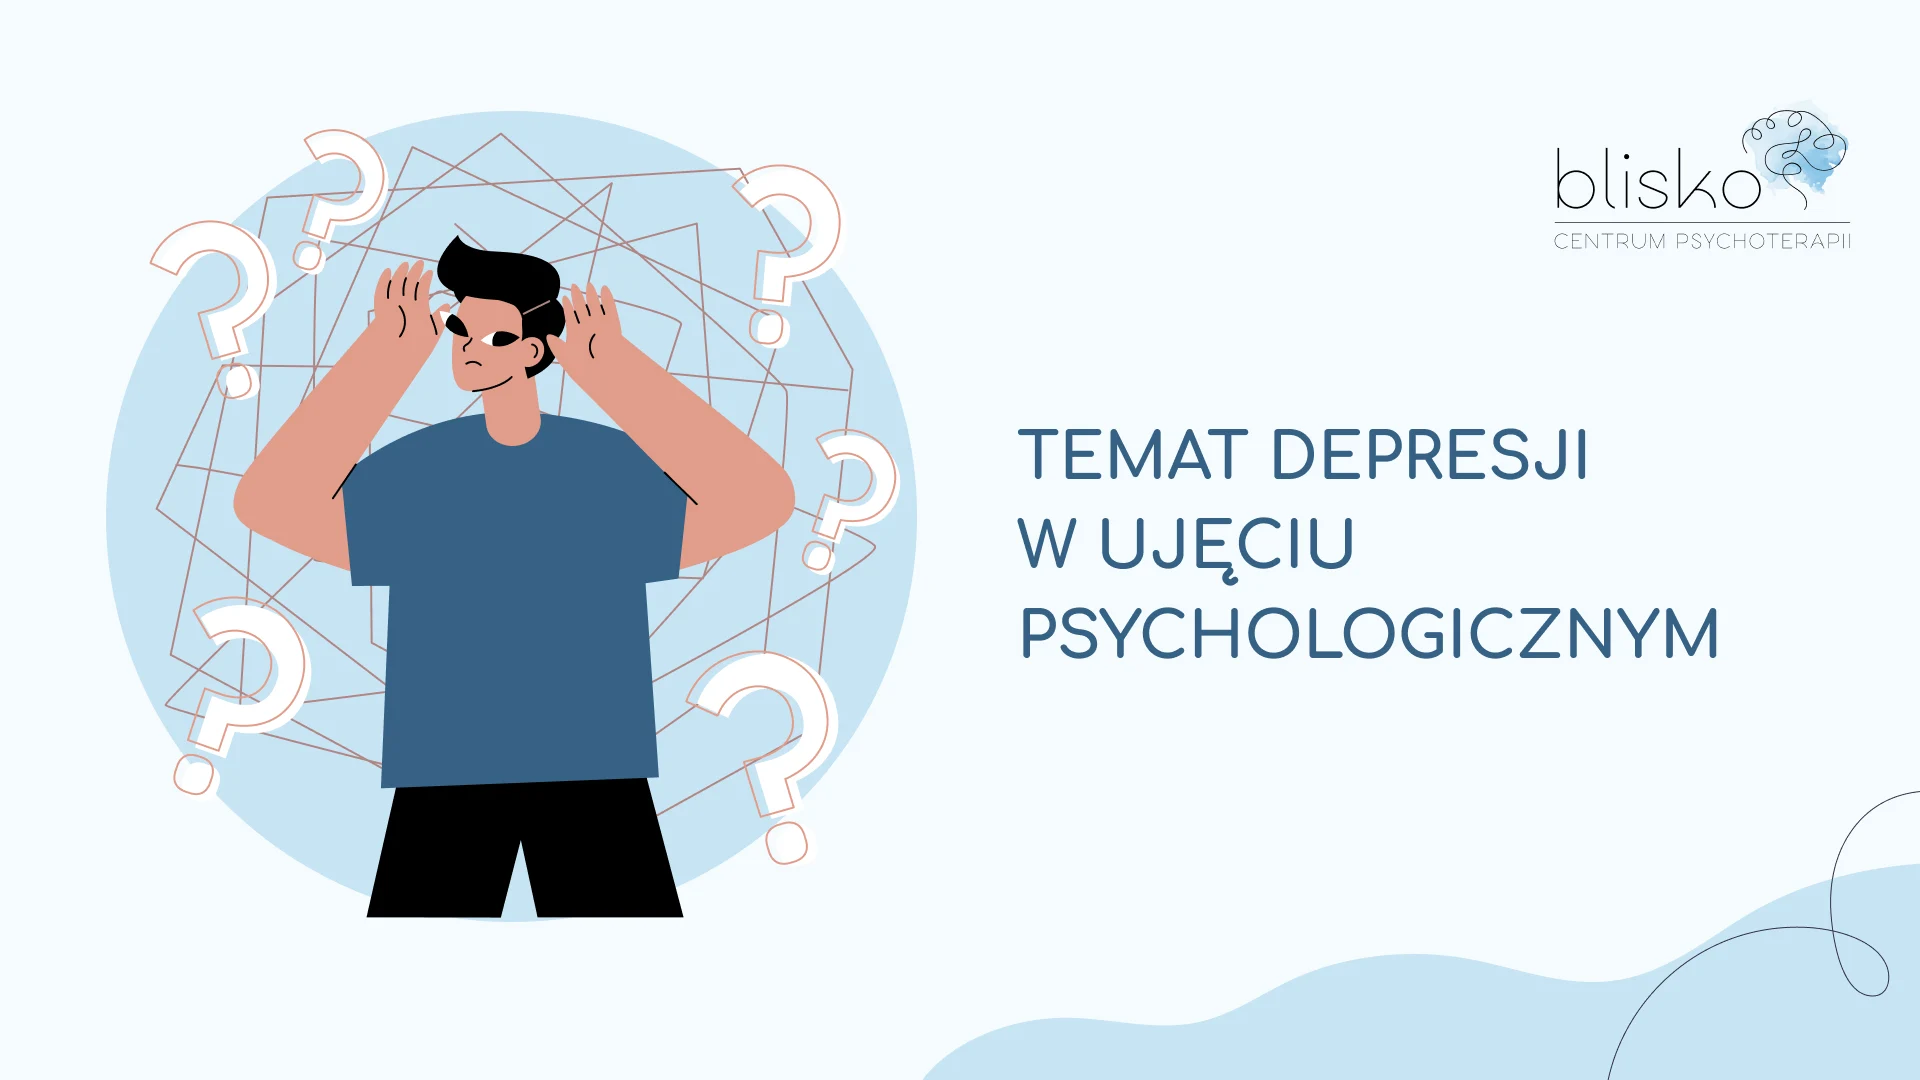 Temat depresji w ujęciu psychologicznym